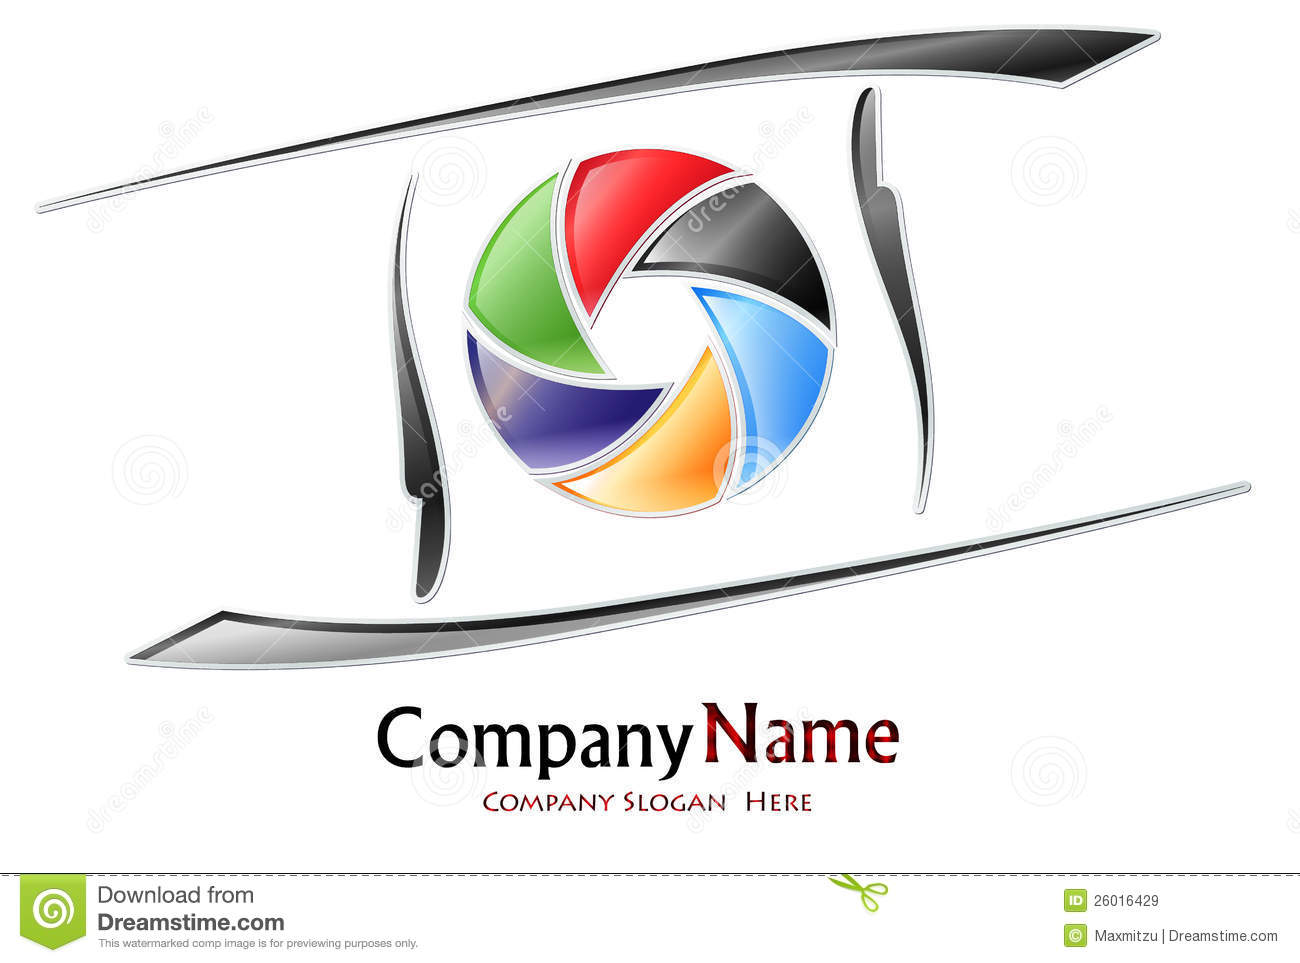 Photography Company Logos